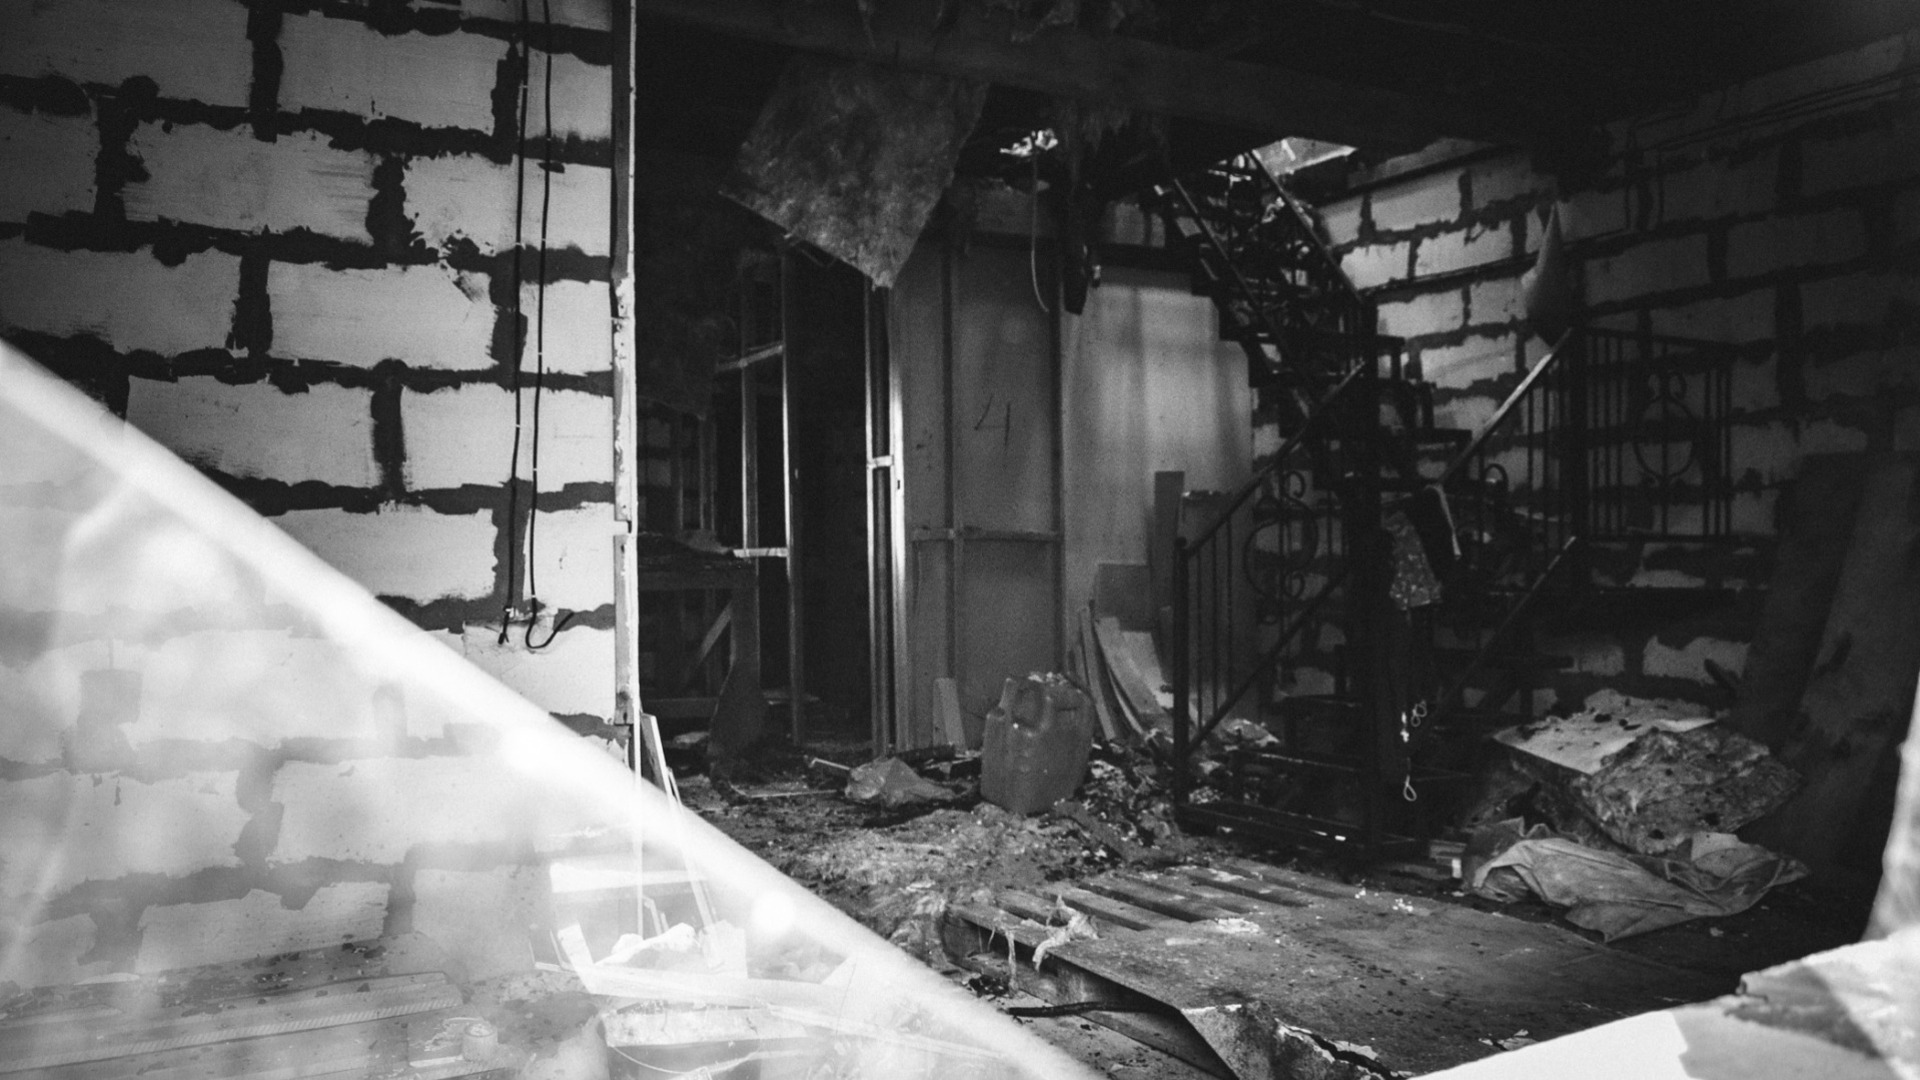 Студенческое общежитие загорелось в Ростове-на-Дону 24 октября